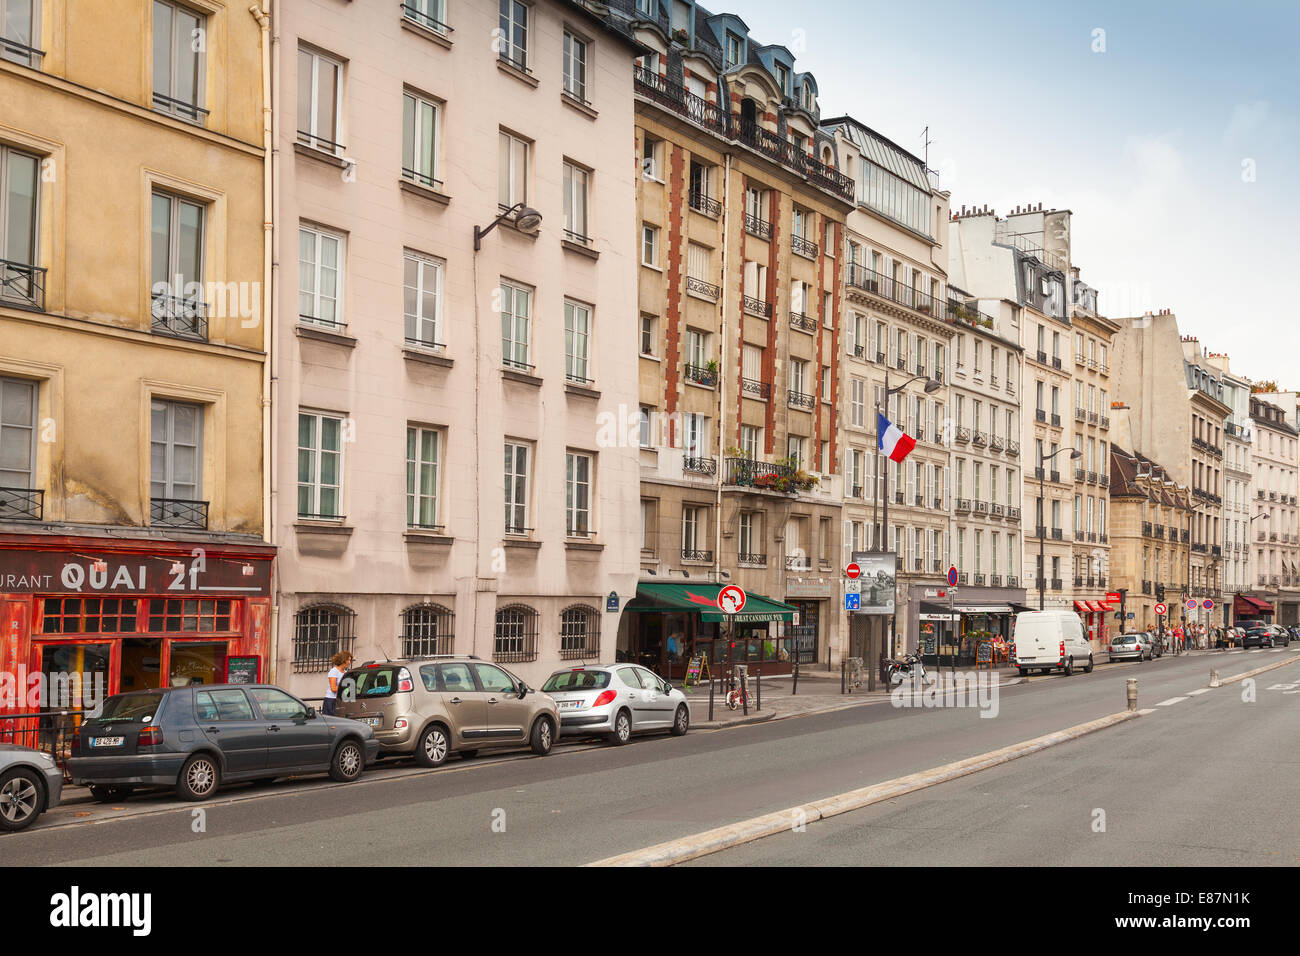 PARIS, FRANCE - AUGUST 07, 2014: Street view of old Paris. Quai des Grands Augustins Stock Photo